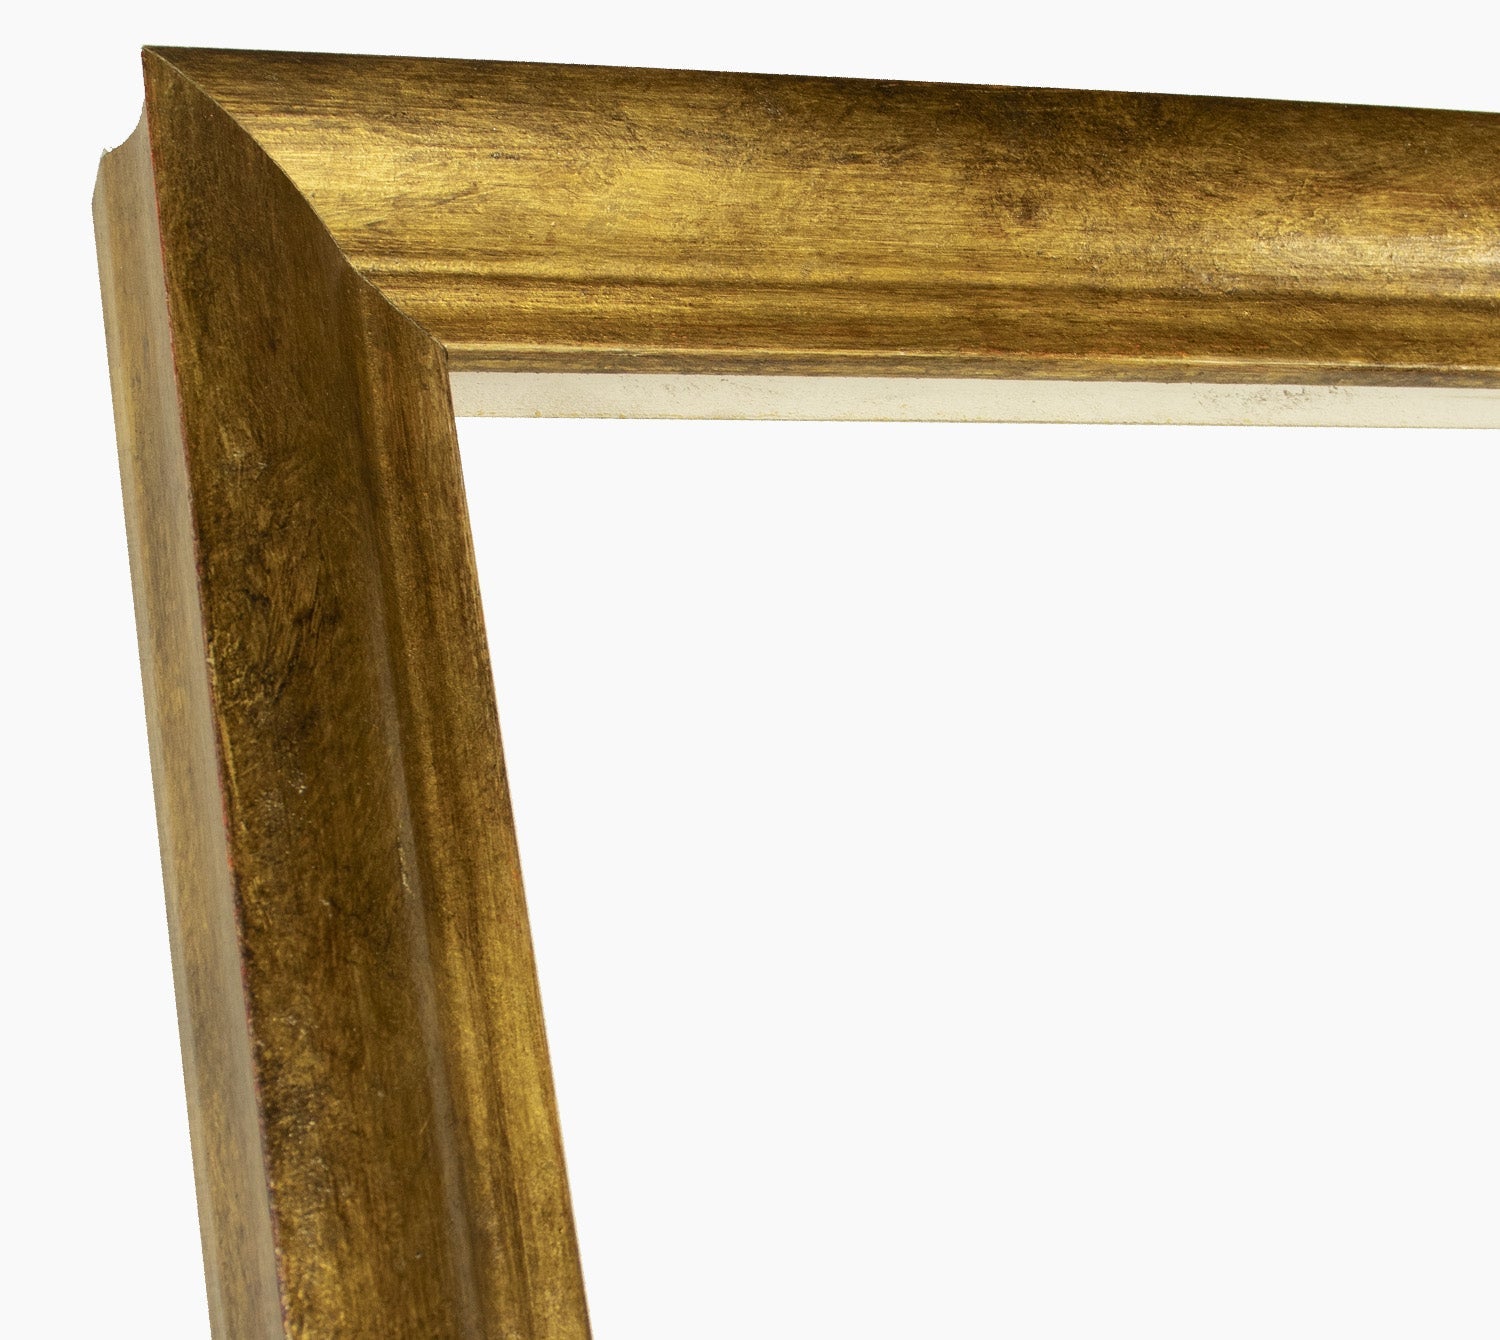 227.230 cadre en bois à la feuille d'or antique mesure de profil 45x45 mm Lombarda cornici S.n.c.